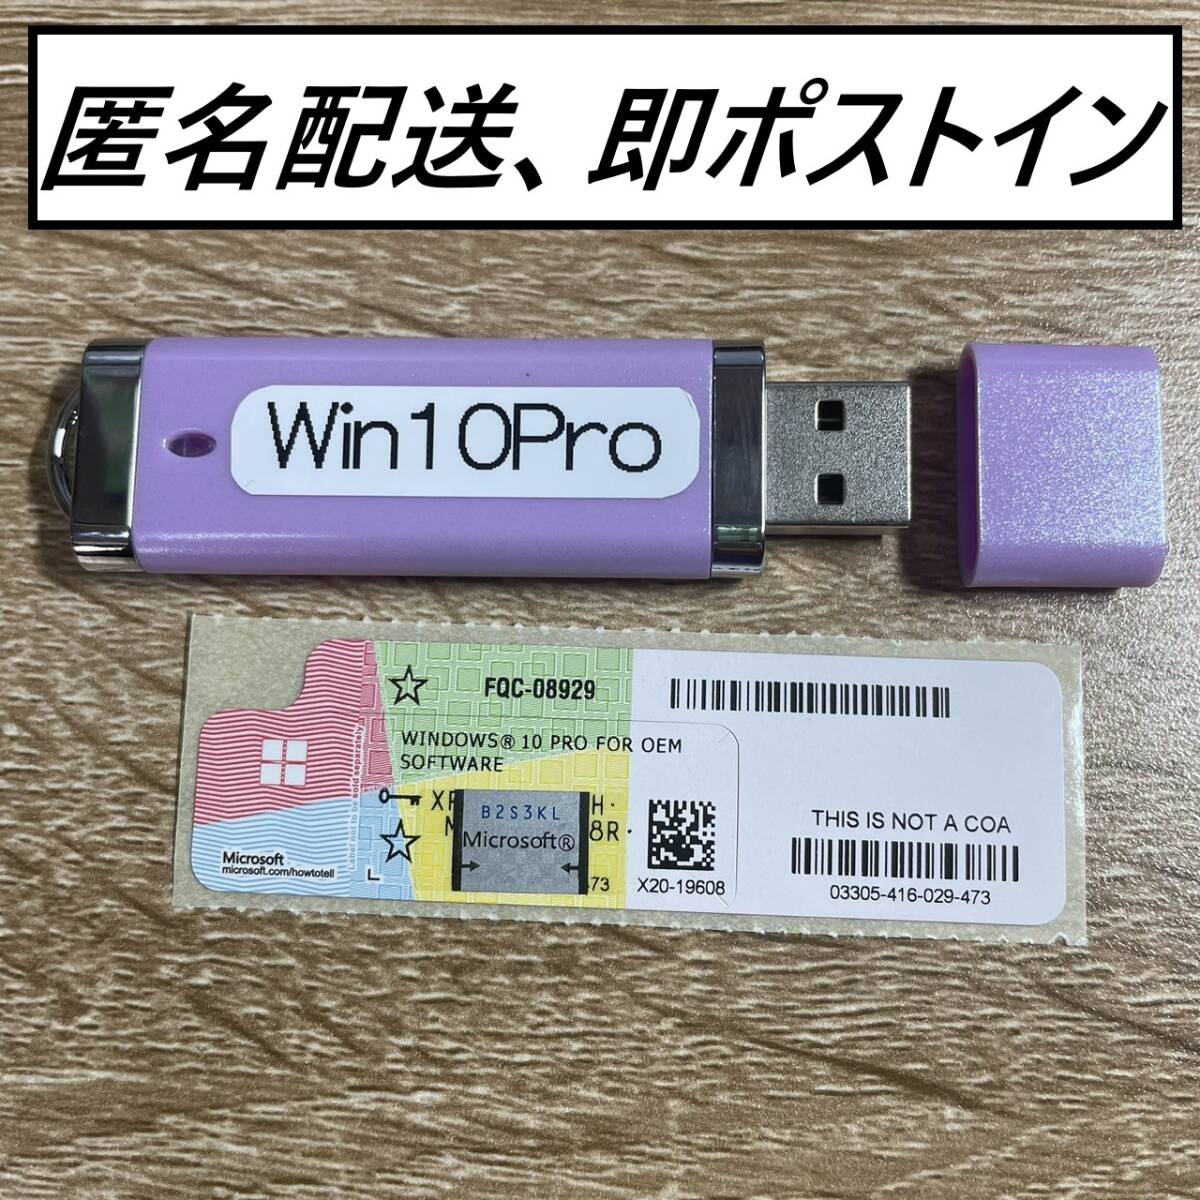 【国内発送】USB付き!!Windows10Proプロダクトシール(32bit 64bit 対応)正規品・未使用品+USBセット_画像1